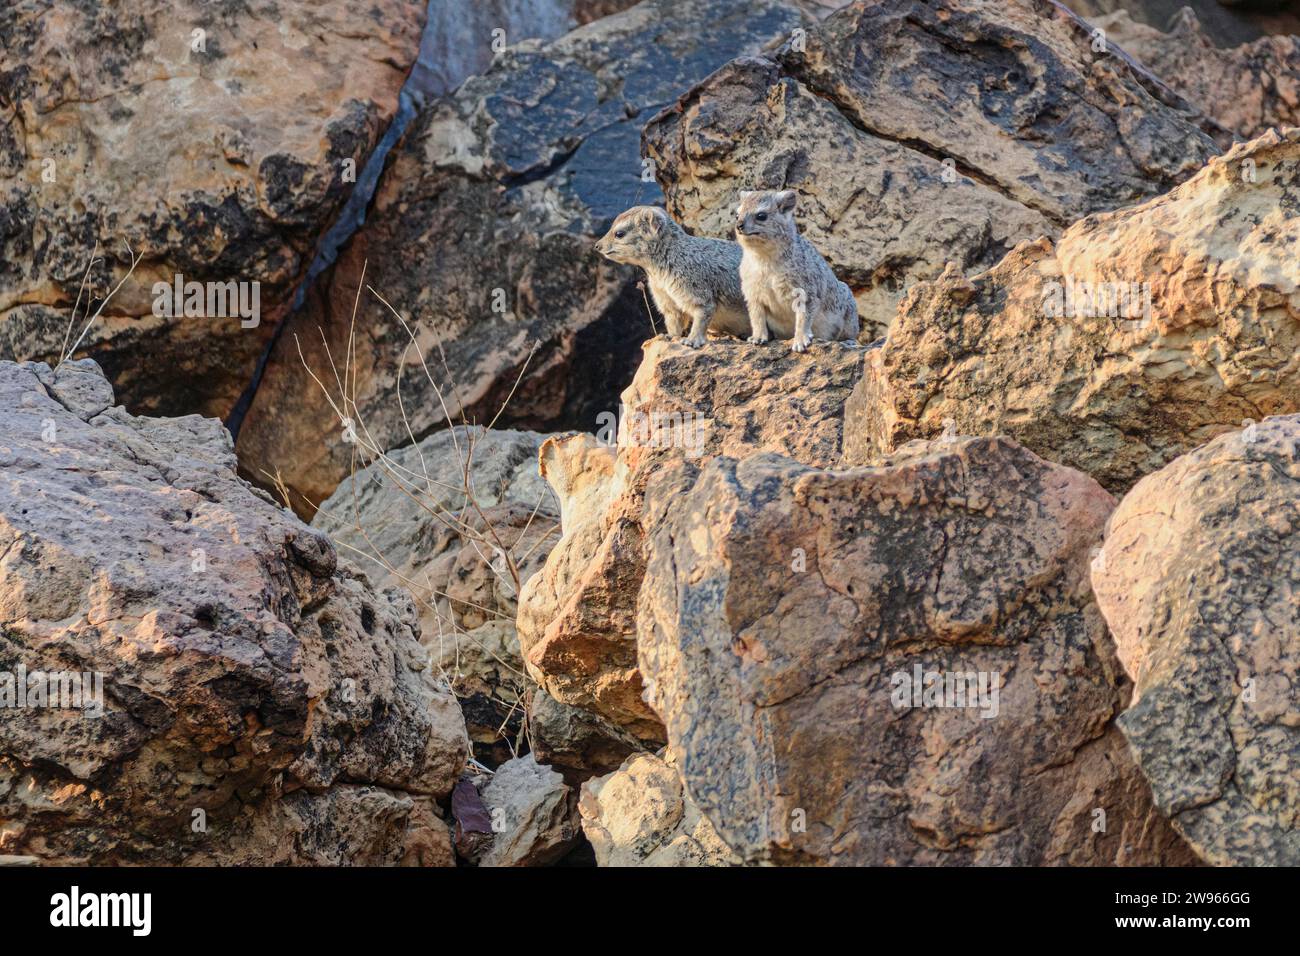 Yellow-spotted rock hyrax, Heterohyrax brucei, Mashatu Game Reserve, Botswana Stock Photo